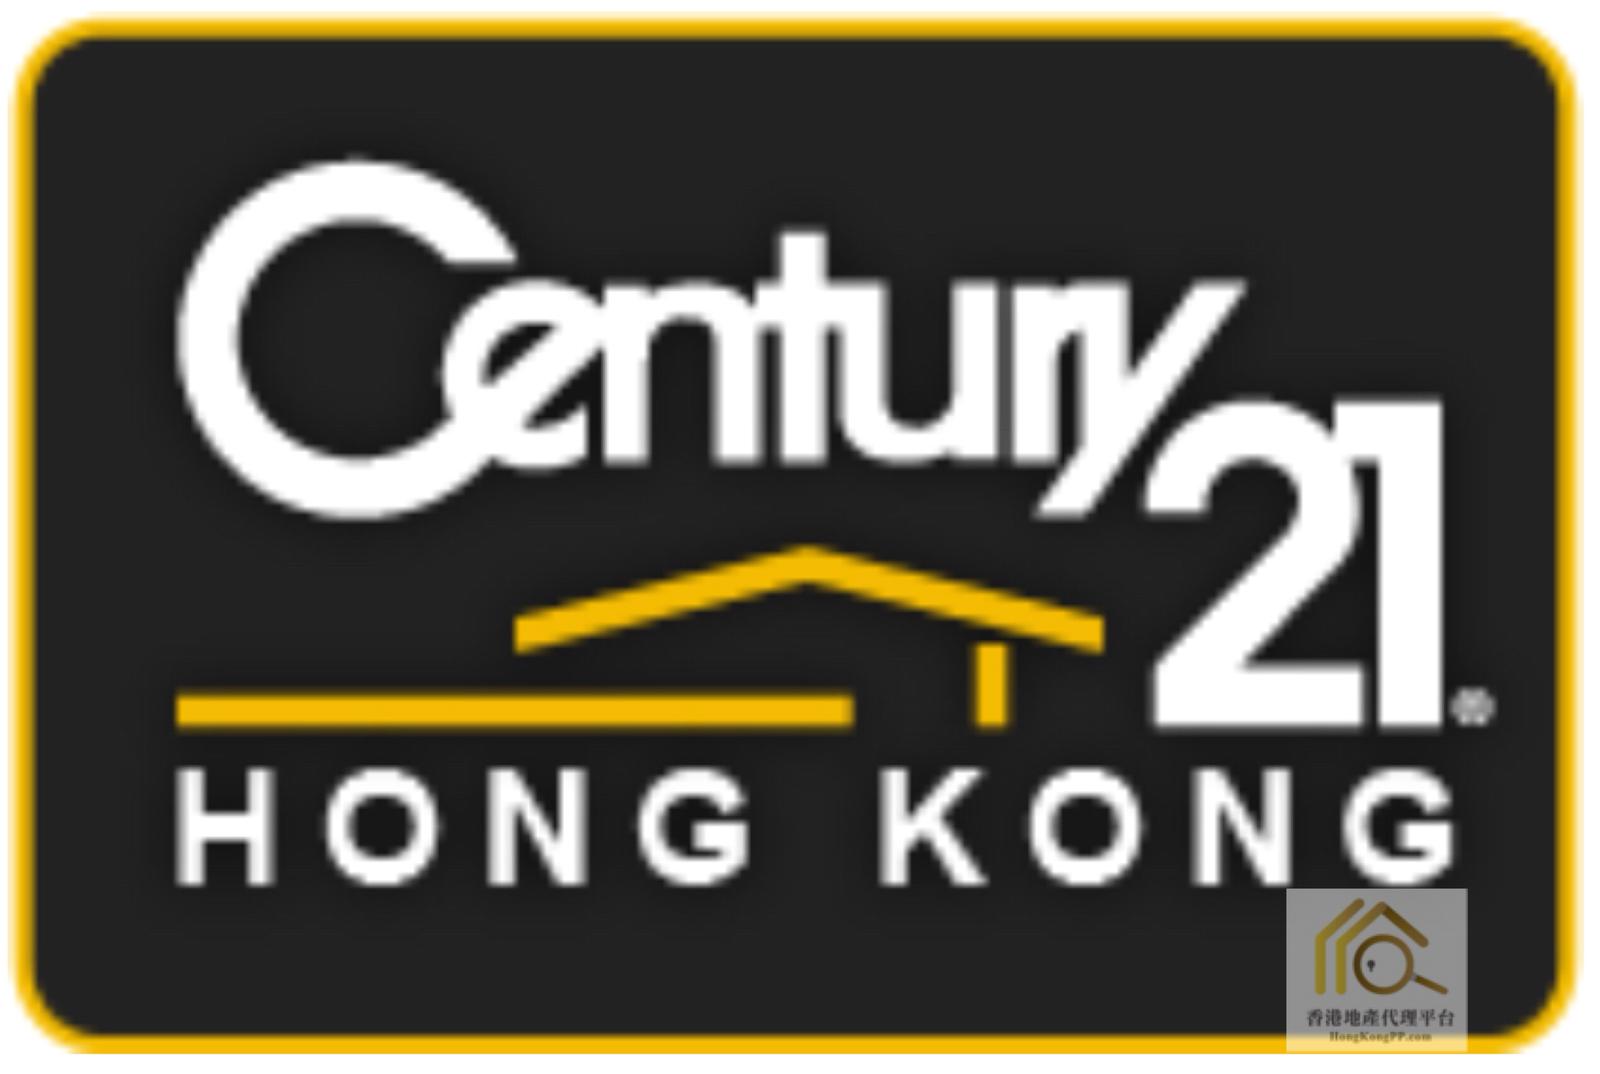 地產代理公司:  世紀21 世紀21奇豐物業顧問行 (西貢分行)